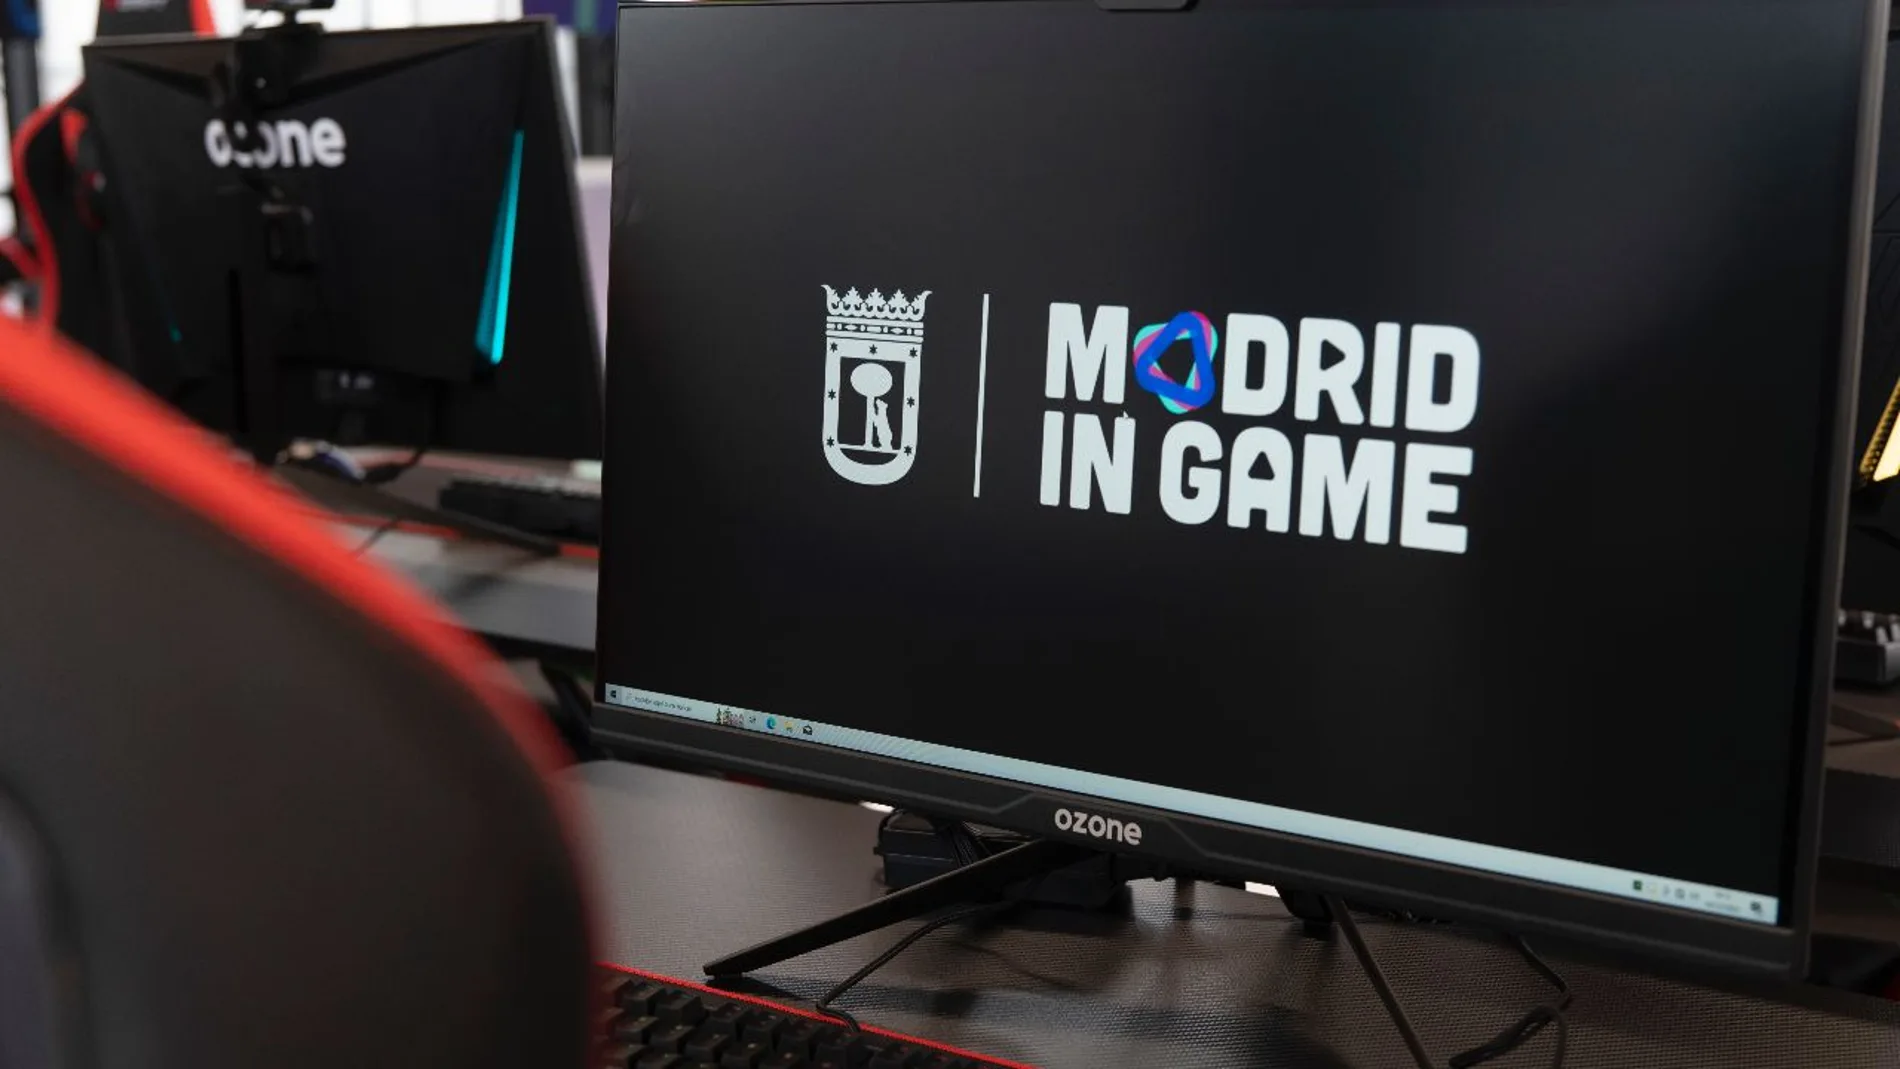 Madrid in Game inaugura su calendario de actividades